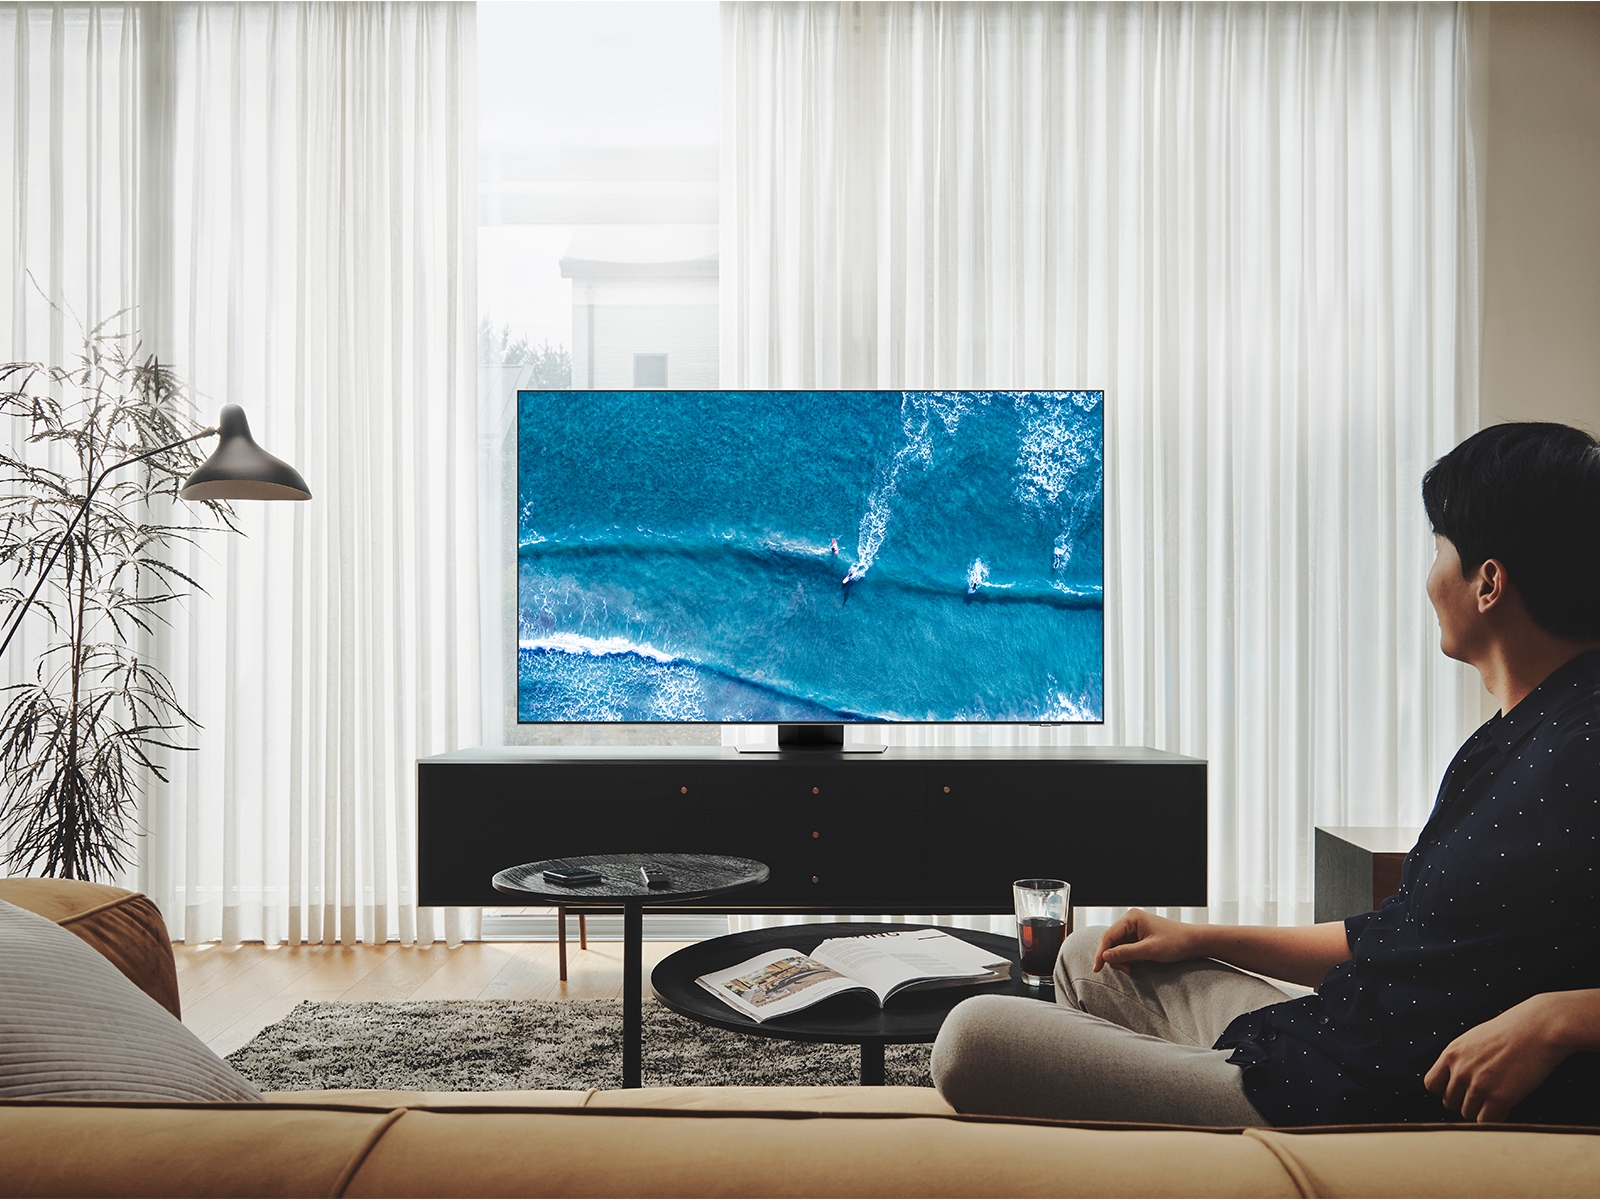 Televisor Samsung 75 pulgadas QLED 4K Ultra HD Smart TV QN75QN85